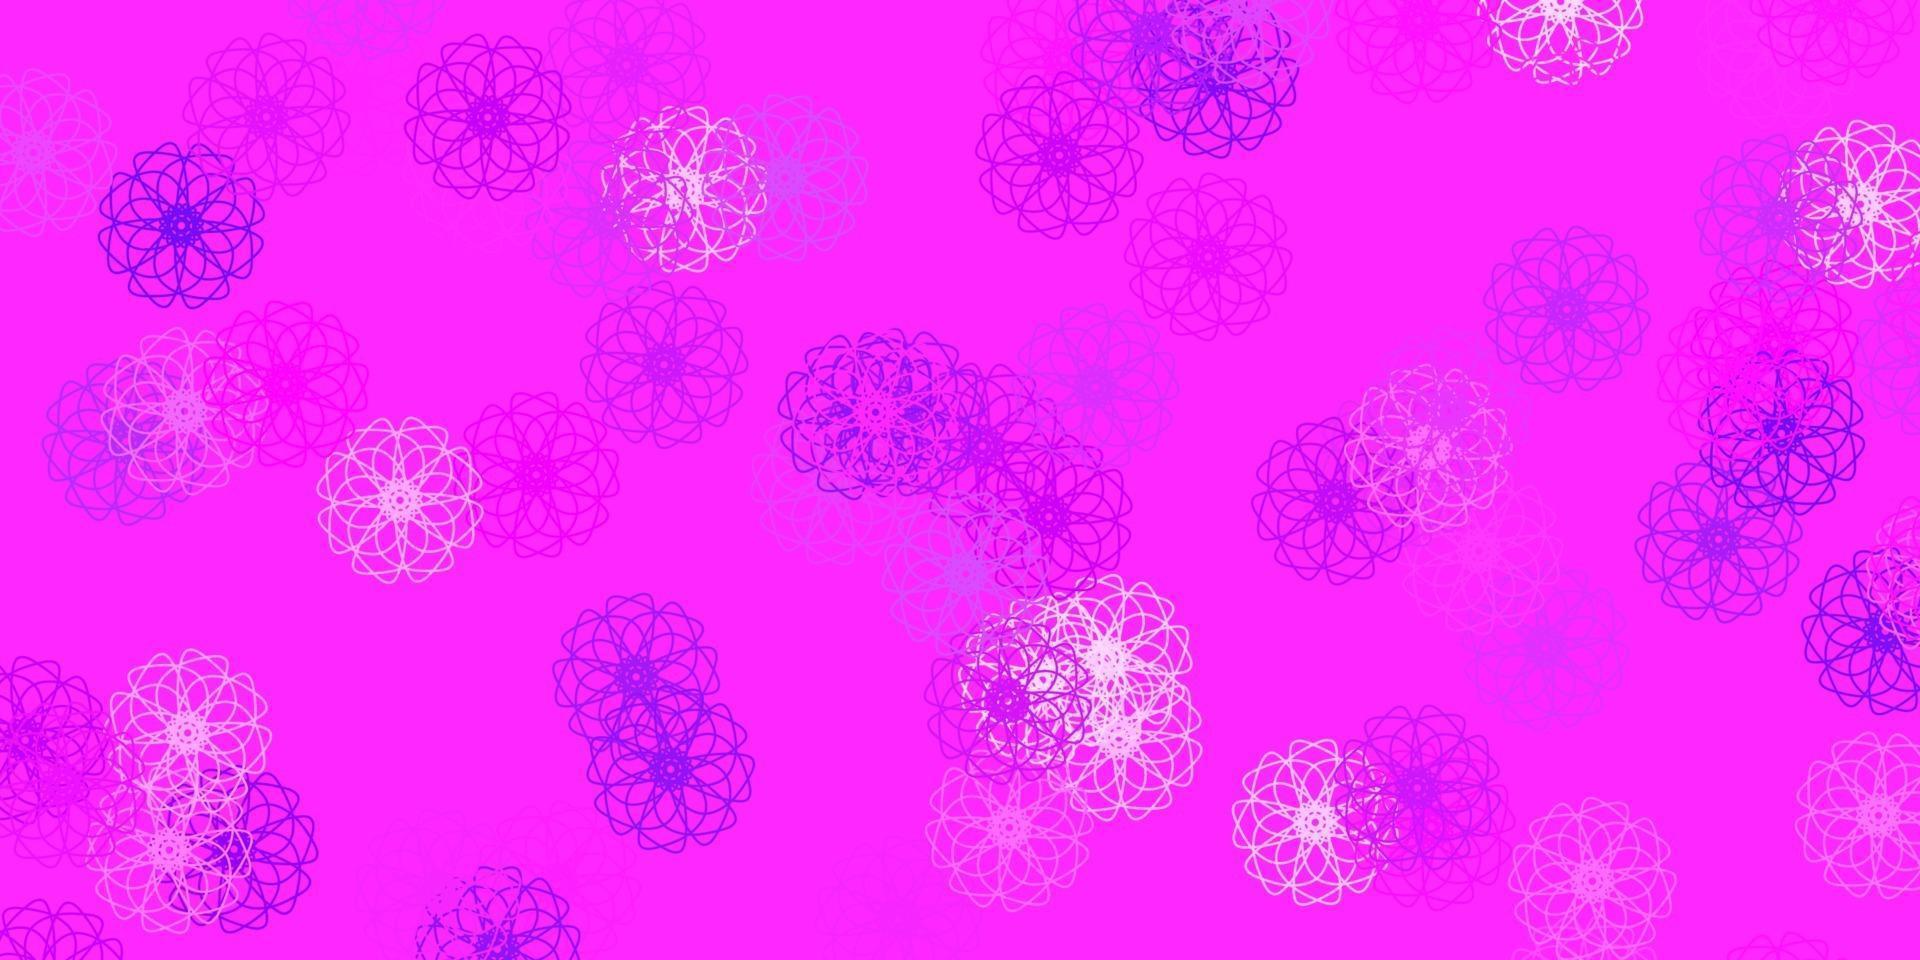 struttura di doodle vettoriale viola chiaro con fiori.